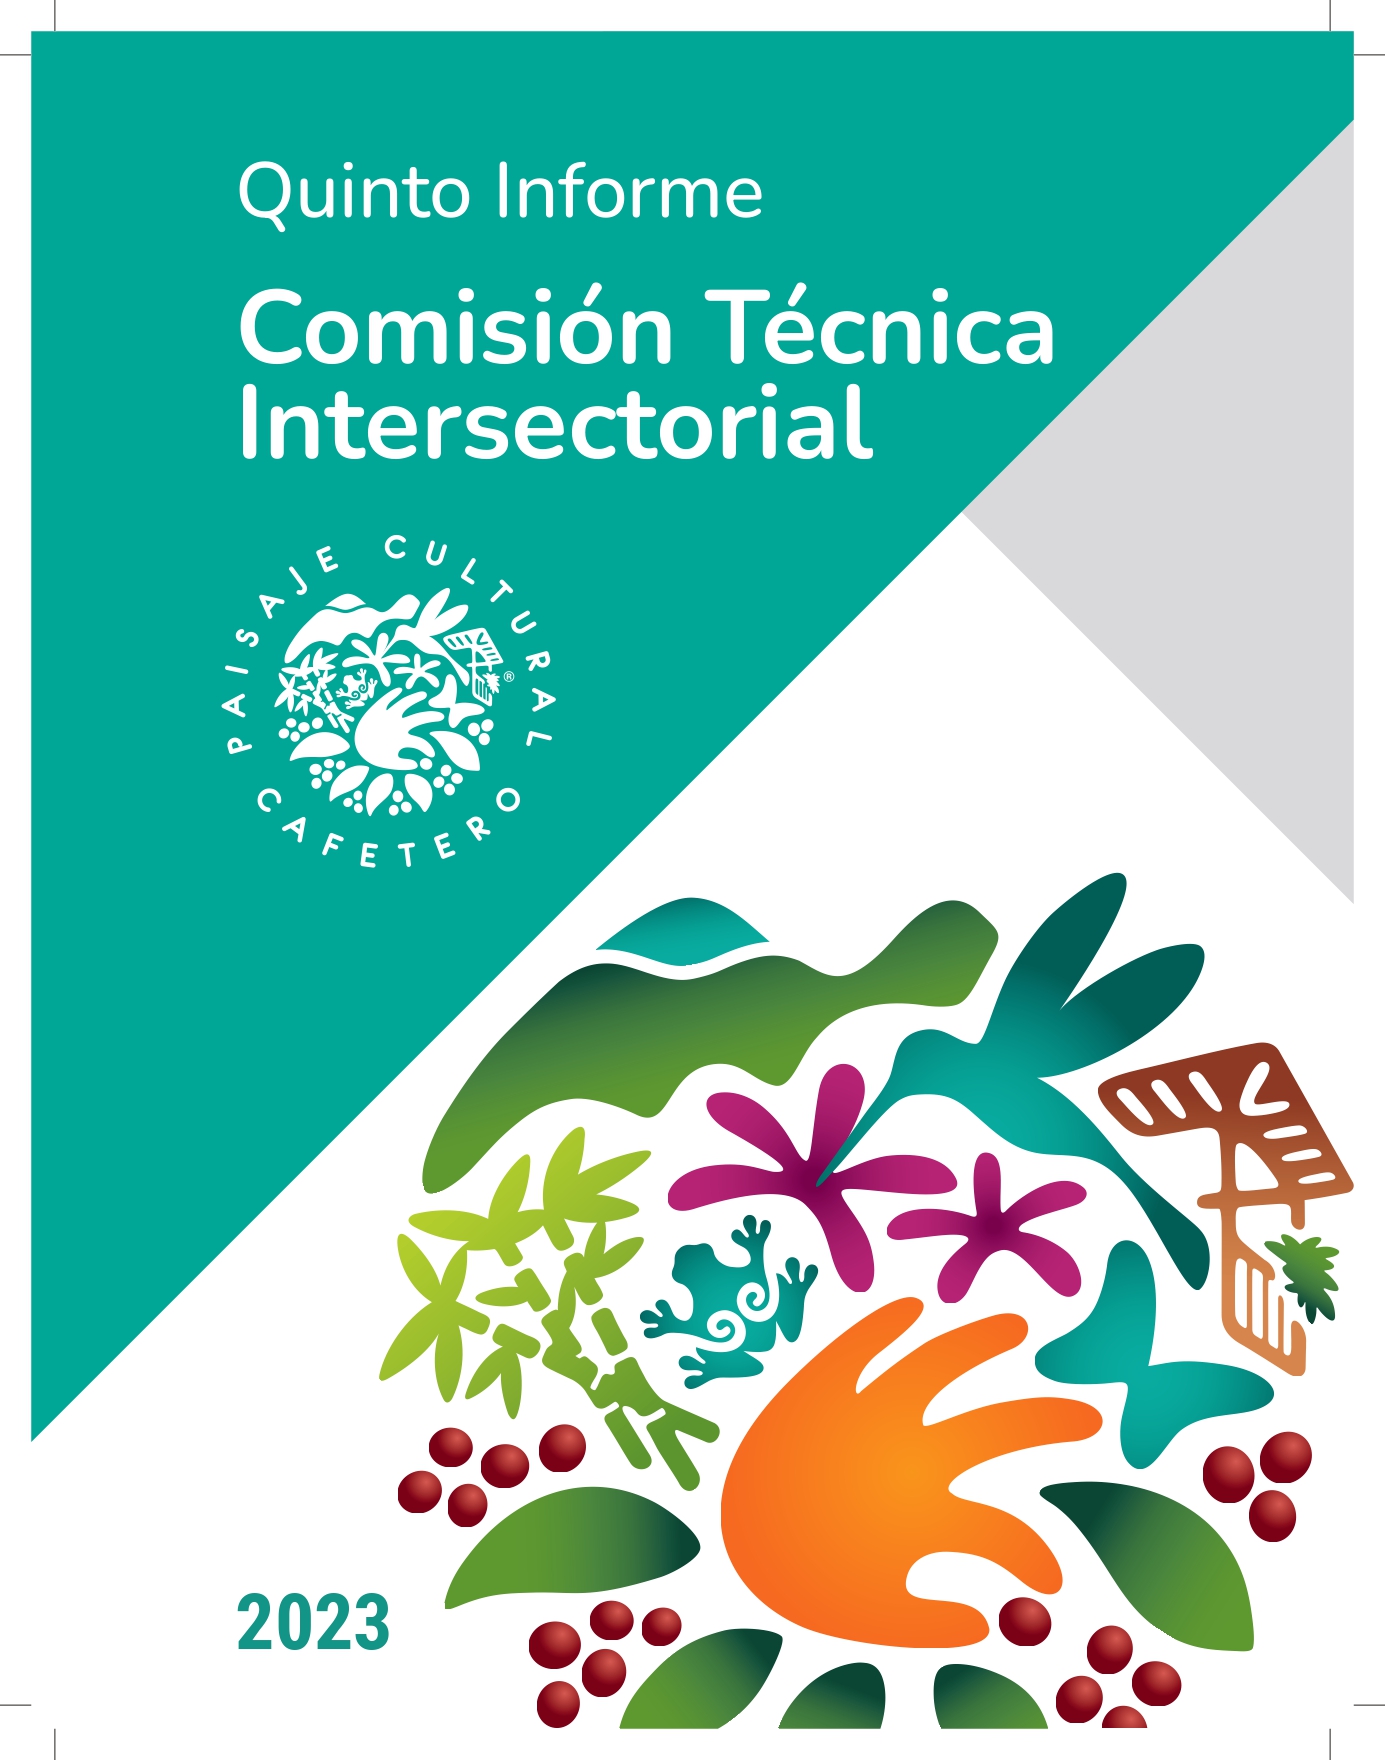 Quinto Informe Comisión Técnica Intersectorial del Paisaje Cultural Cafetero de Colombia